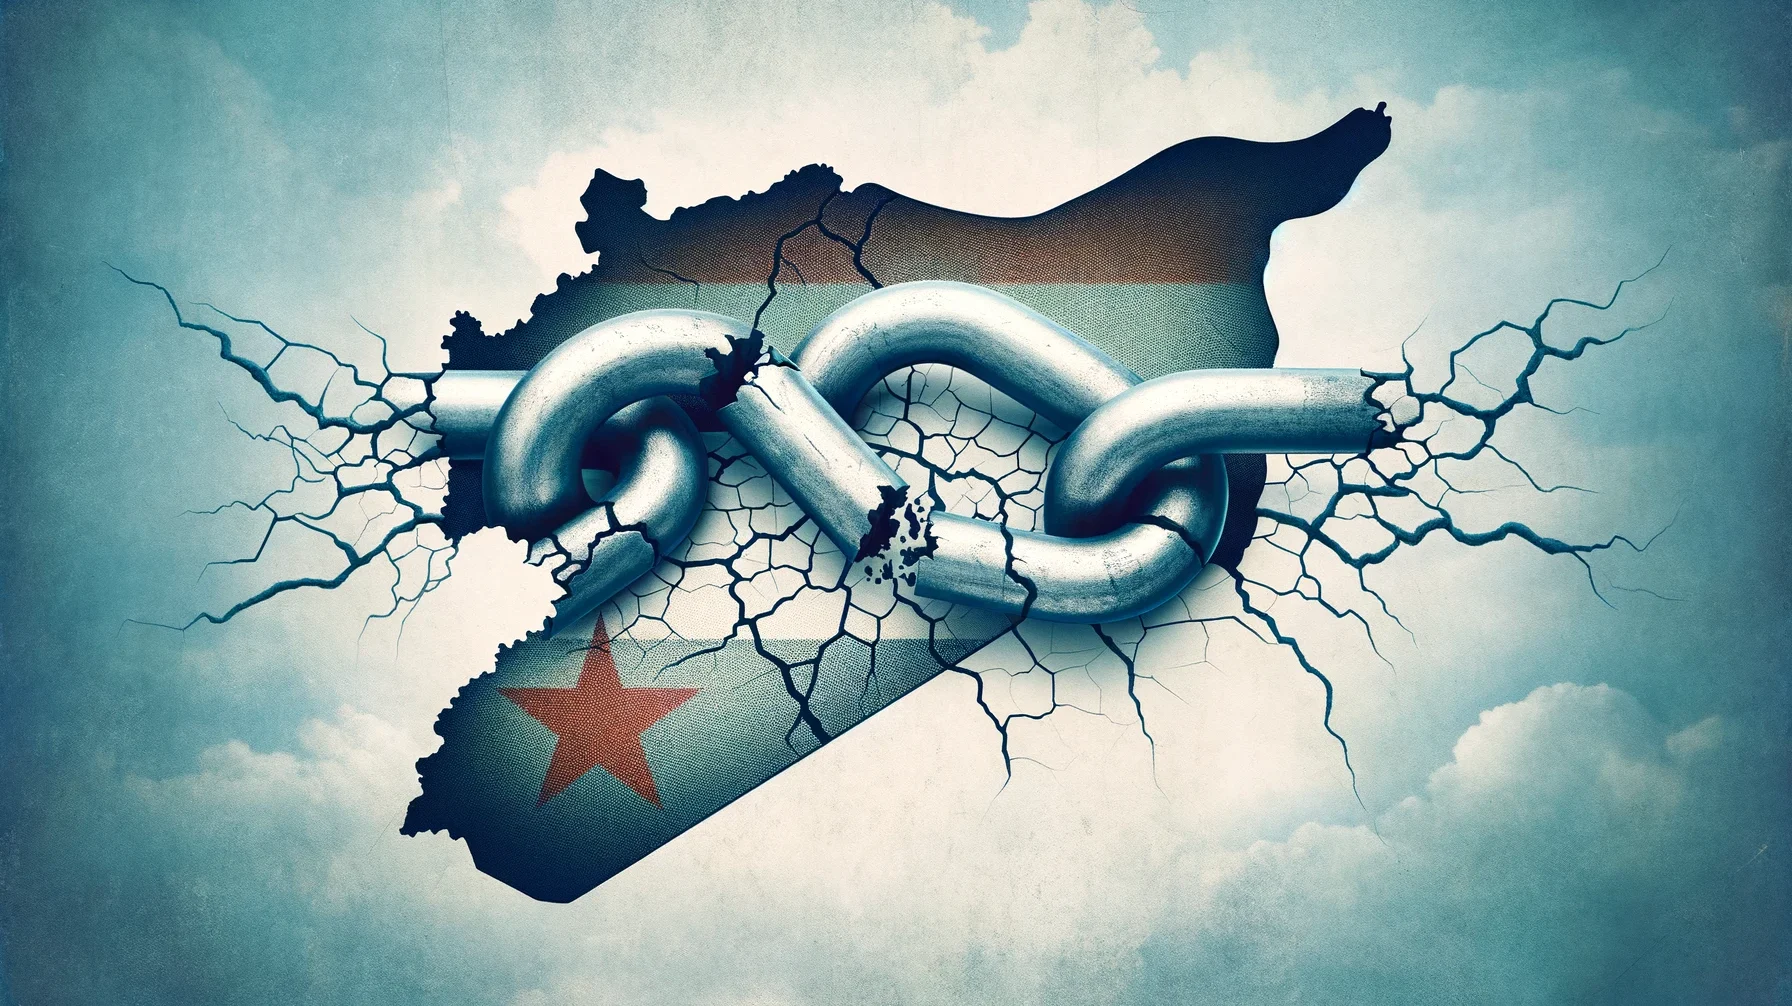 Will Harmony Return to Syrian Society?